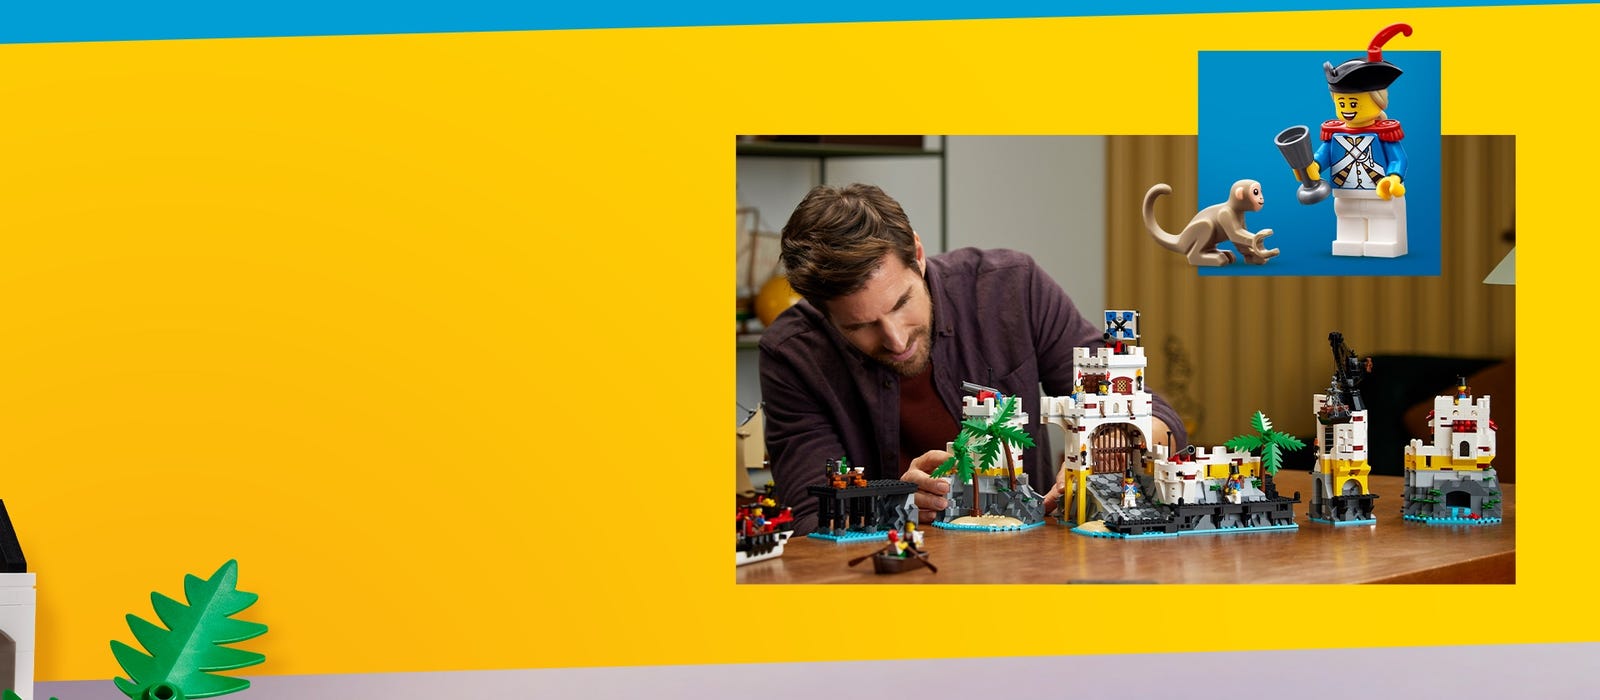 Egy férfi, aki LEGO erődöt és kalózhajót ábrázoló készletet épít, a kép sarkában egy kisebb képen egy minifigura.